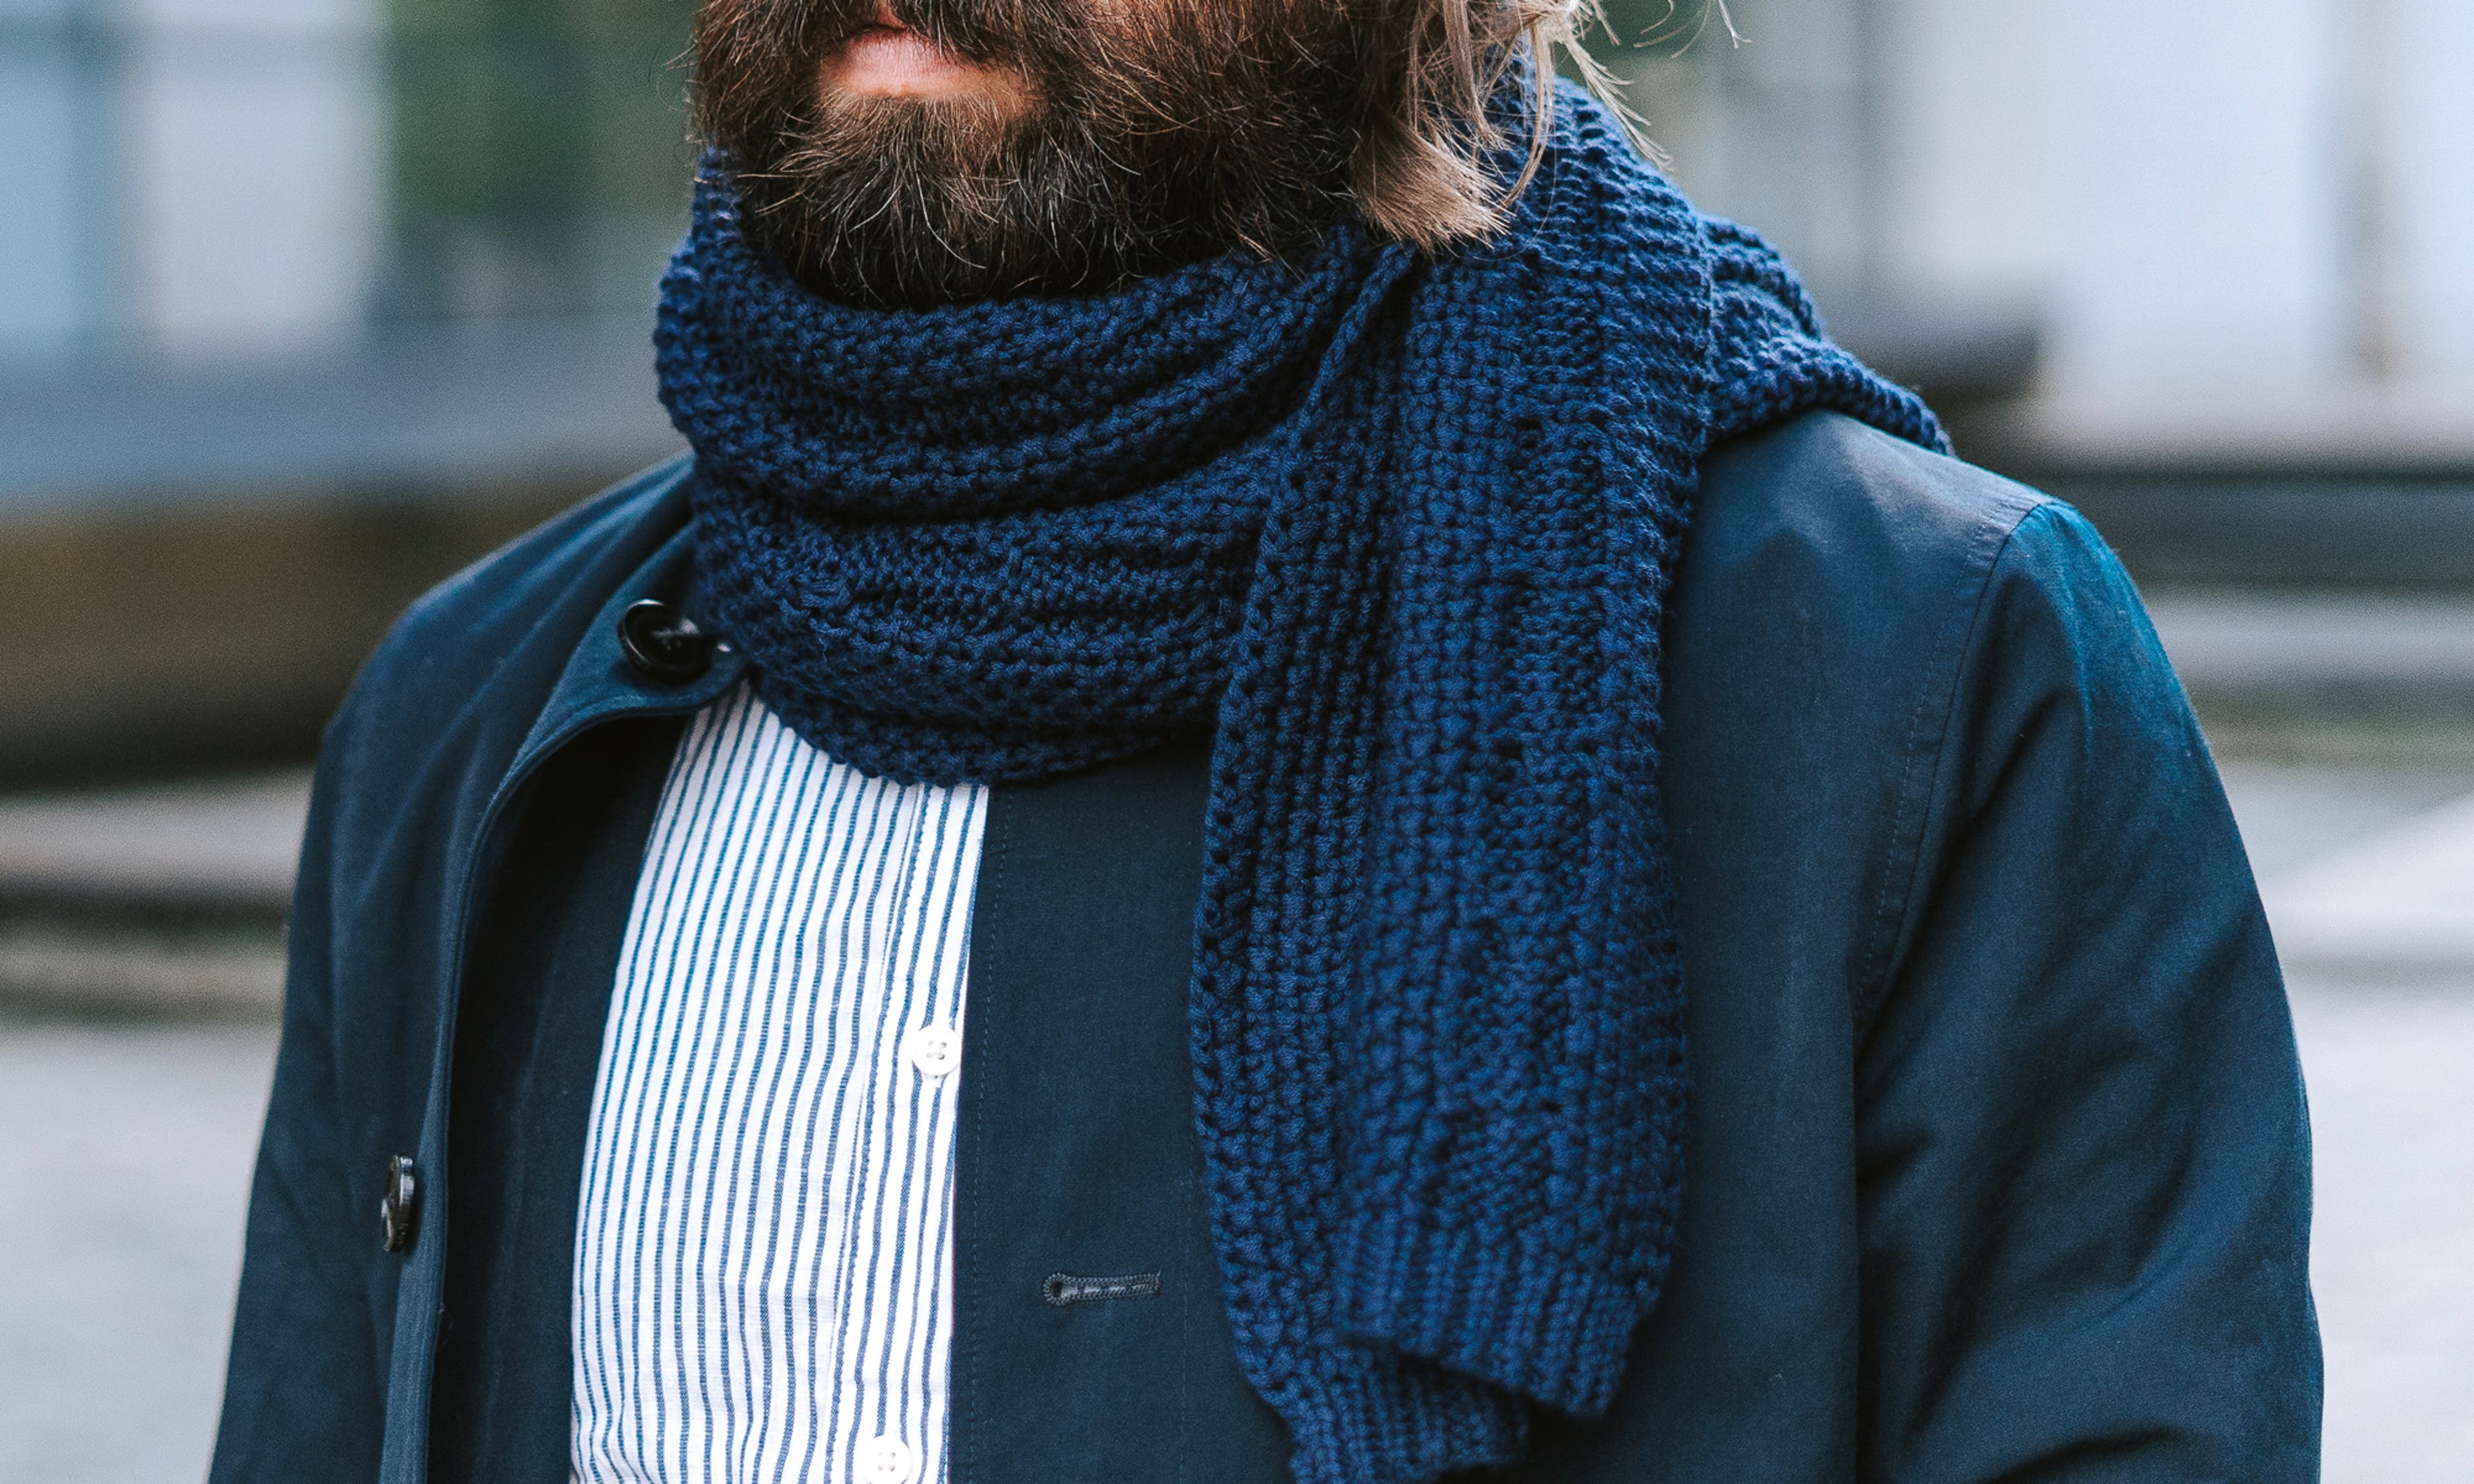 Las bufandas: 8 ideas geniales para usarlas